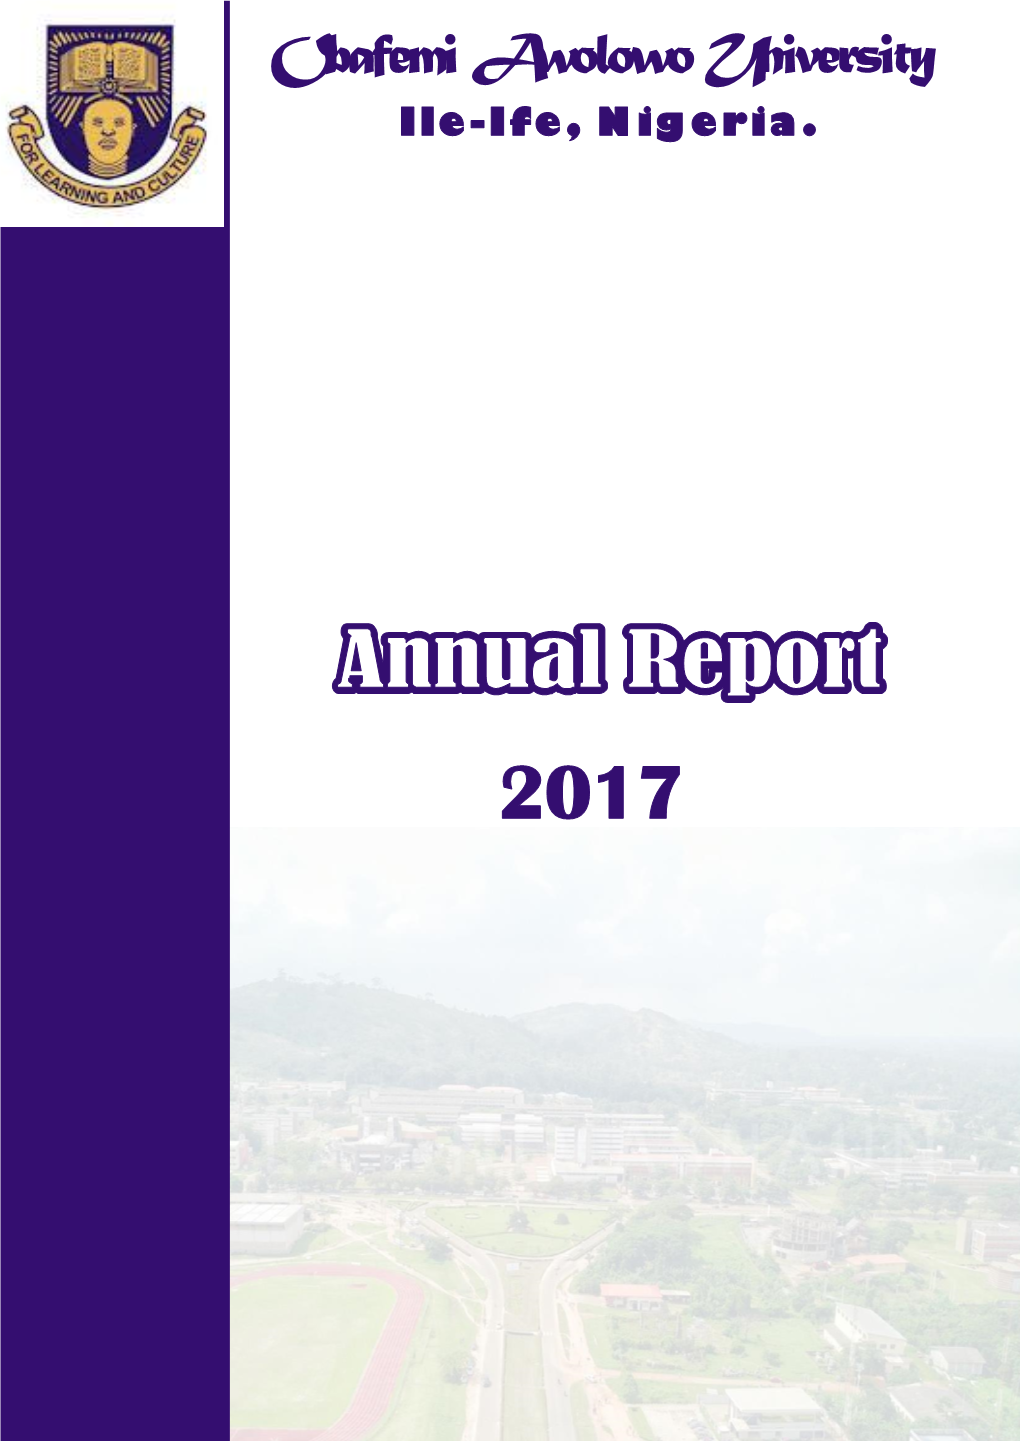 OAU Annual Report 2017.Pdf